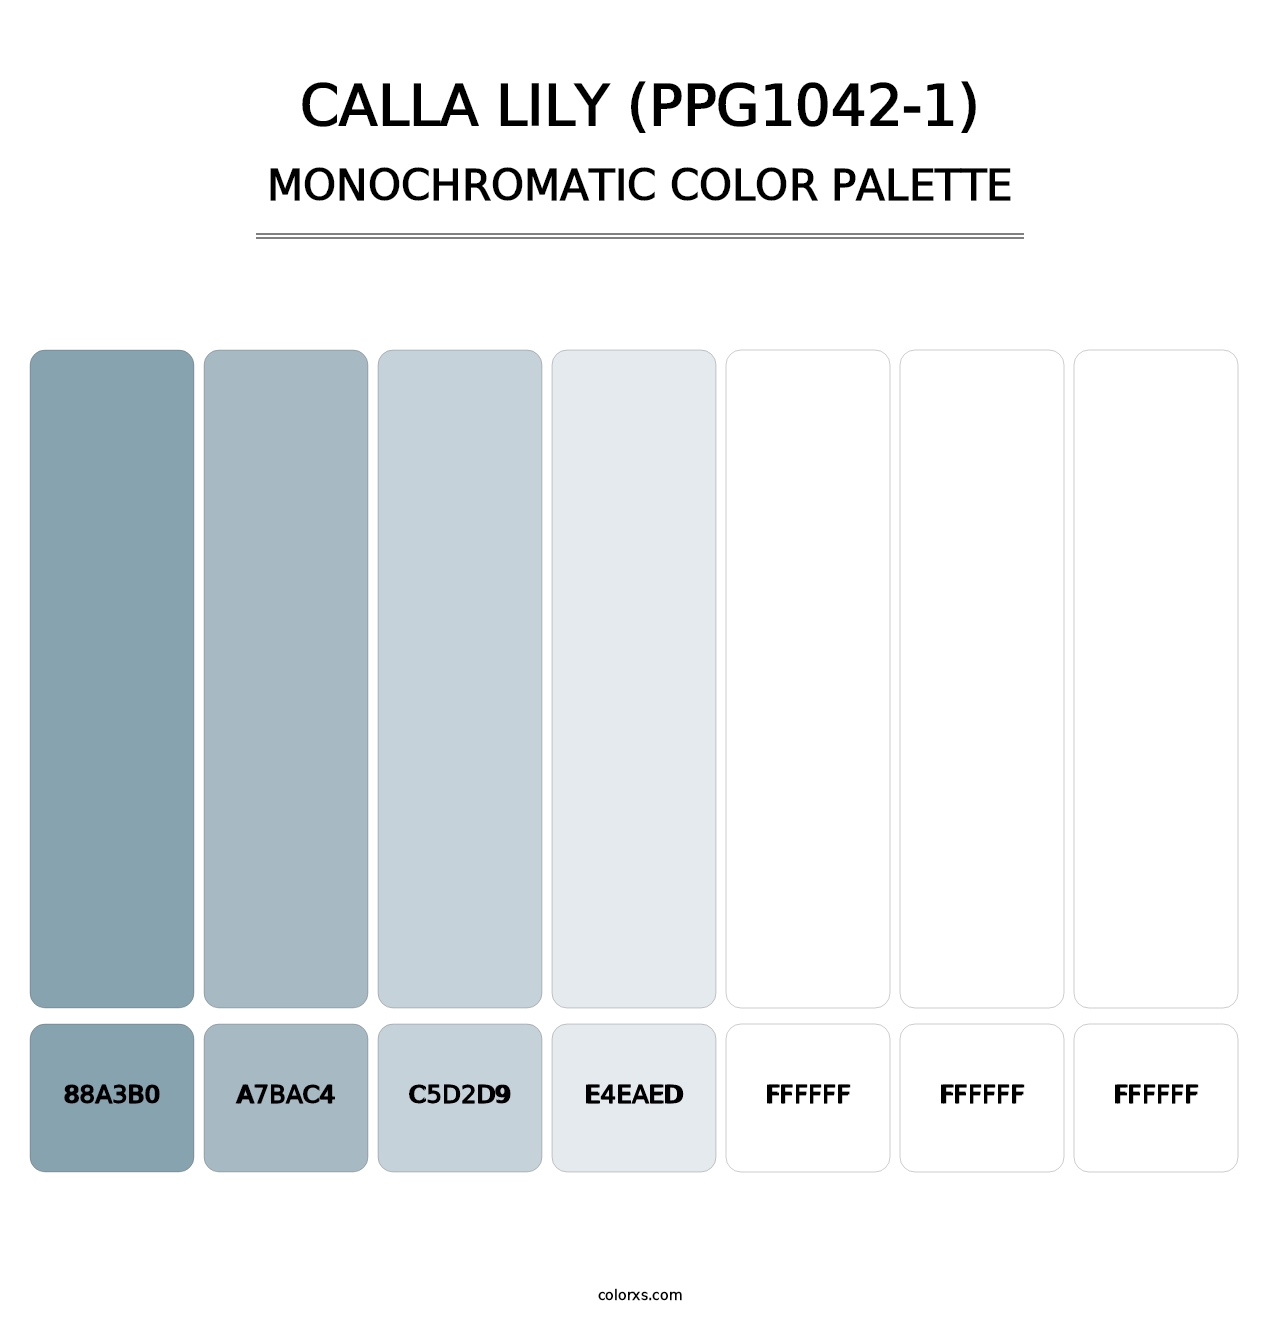 Calla Lily (PPG1042-1) - Monochromatic Color Palette